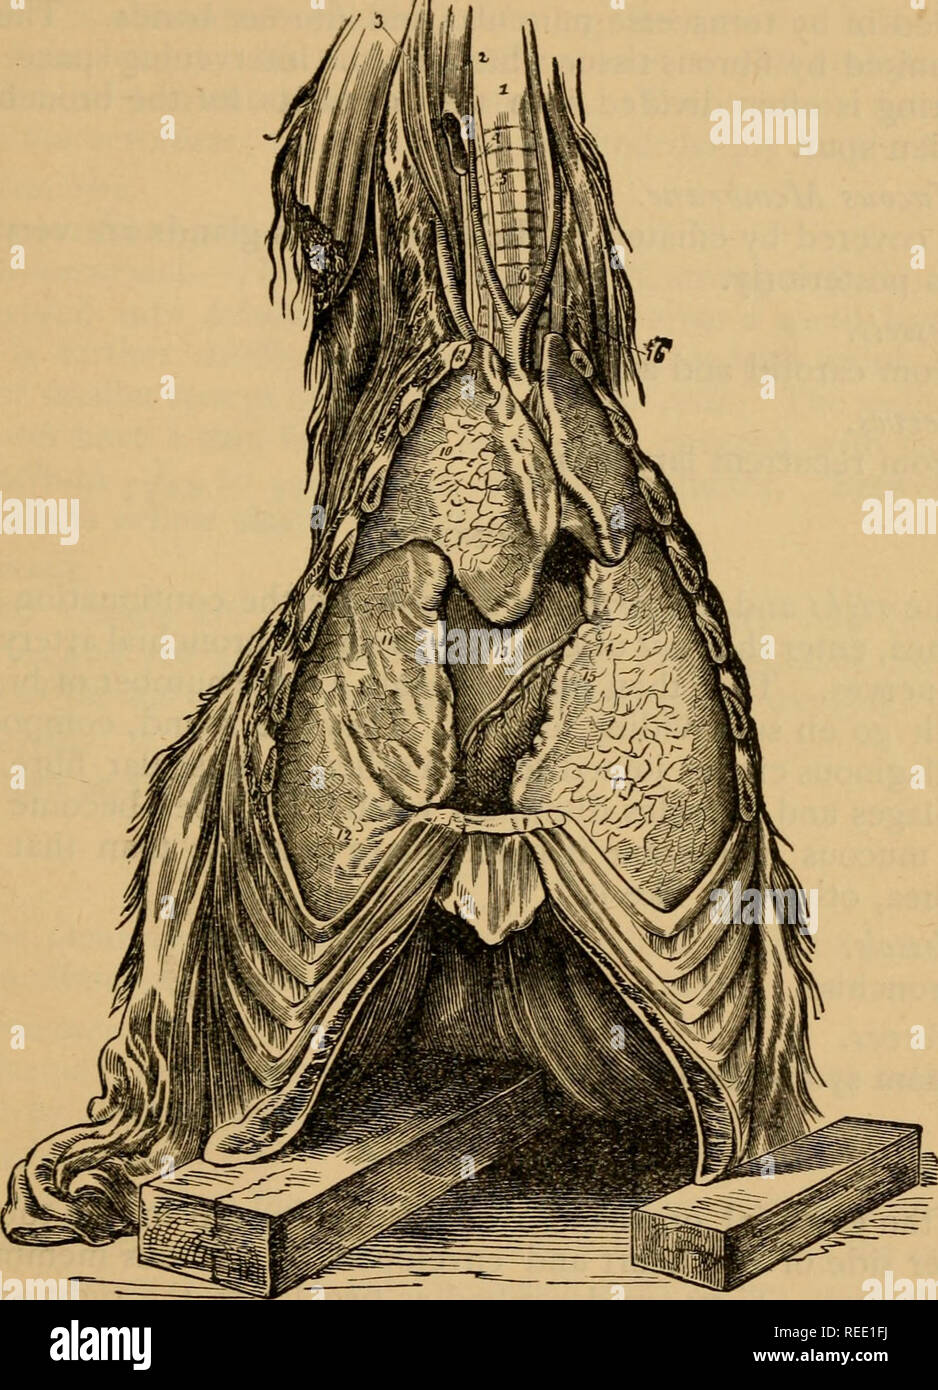 . Un compend equino di anatomia e fisiologia. Cavalli; Cavalli -- anatomia. Anatomia viscerale. FtG. 23. 137. Il respira.TORY ORGANI; inferiore, o vista frontale. Trachea; 2, la vena giugulare; 3, Grande rectusanticus muscolo; 4, arteria carotide; 5, longus colli muscolo; 6, origine delle carotidi comuni; 7, arteria vertebrale; 8, la sezione della prima nervatura; 9, trunk cefalica di arteria ascellare destra; 10, lobo anteriore del polmone destro; 11, medio, o lobo supplementare di ditto; 12, la porzione posteriore o lobo di ditto; 13, cuore; 14, arteria cardiaca; 15, ventricolare ramo della vena cardiaca; 16, CEsophagus. 10. Si prega di notare t Foto Stock